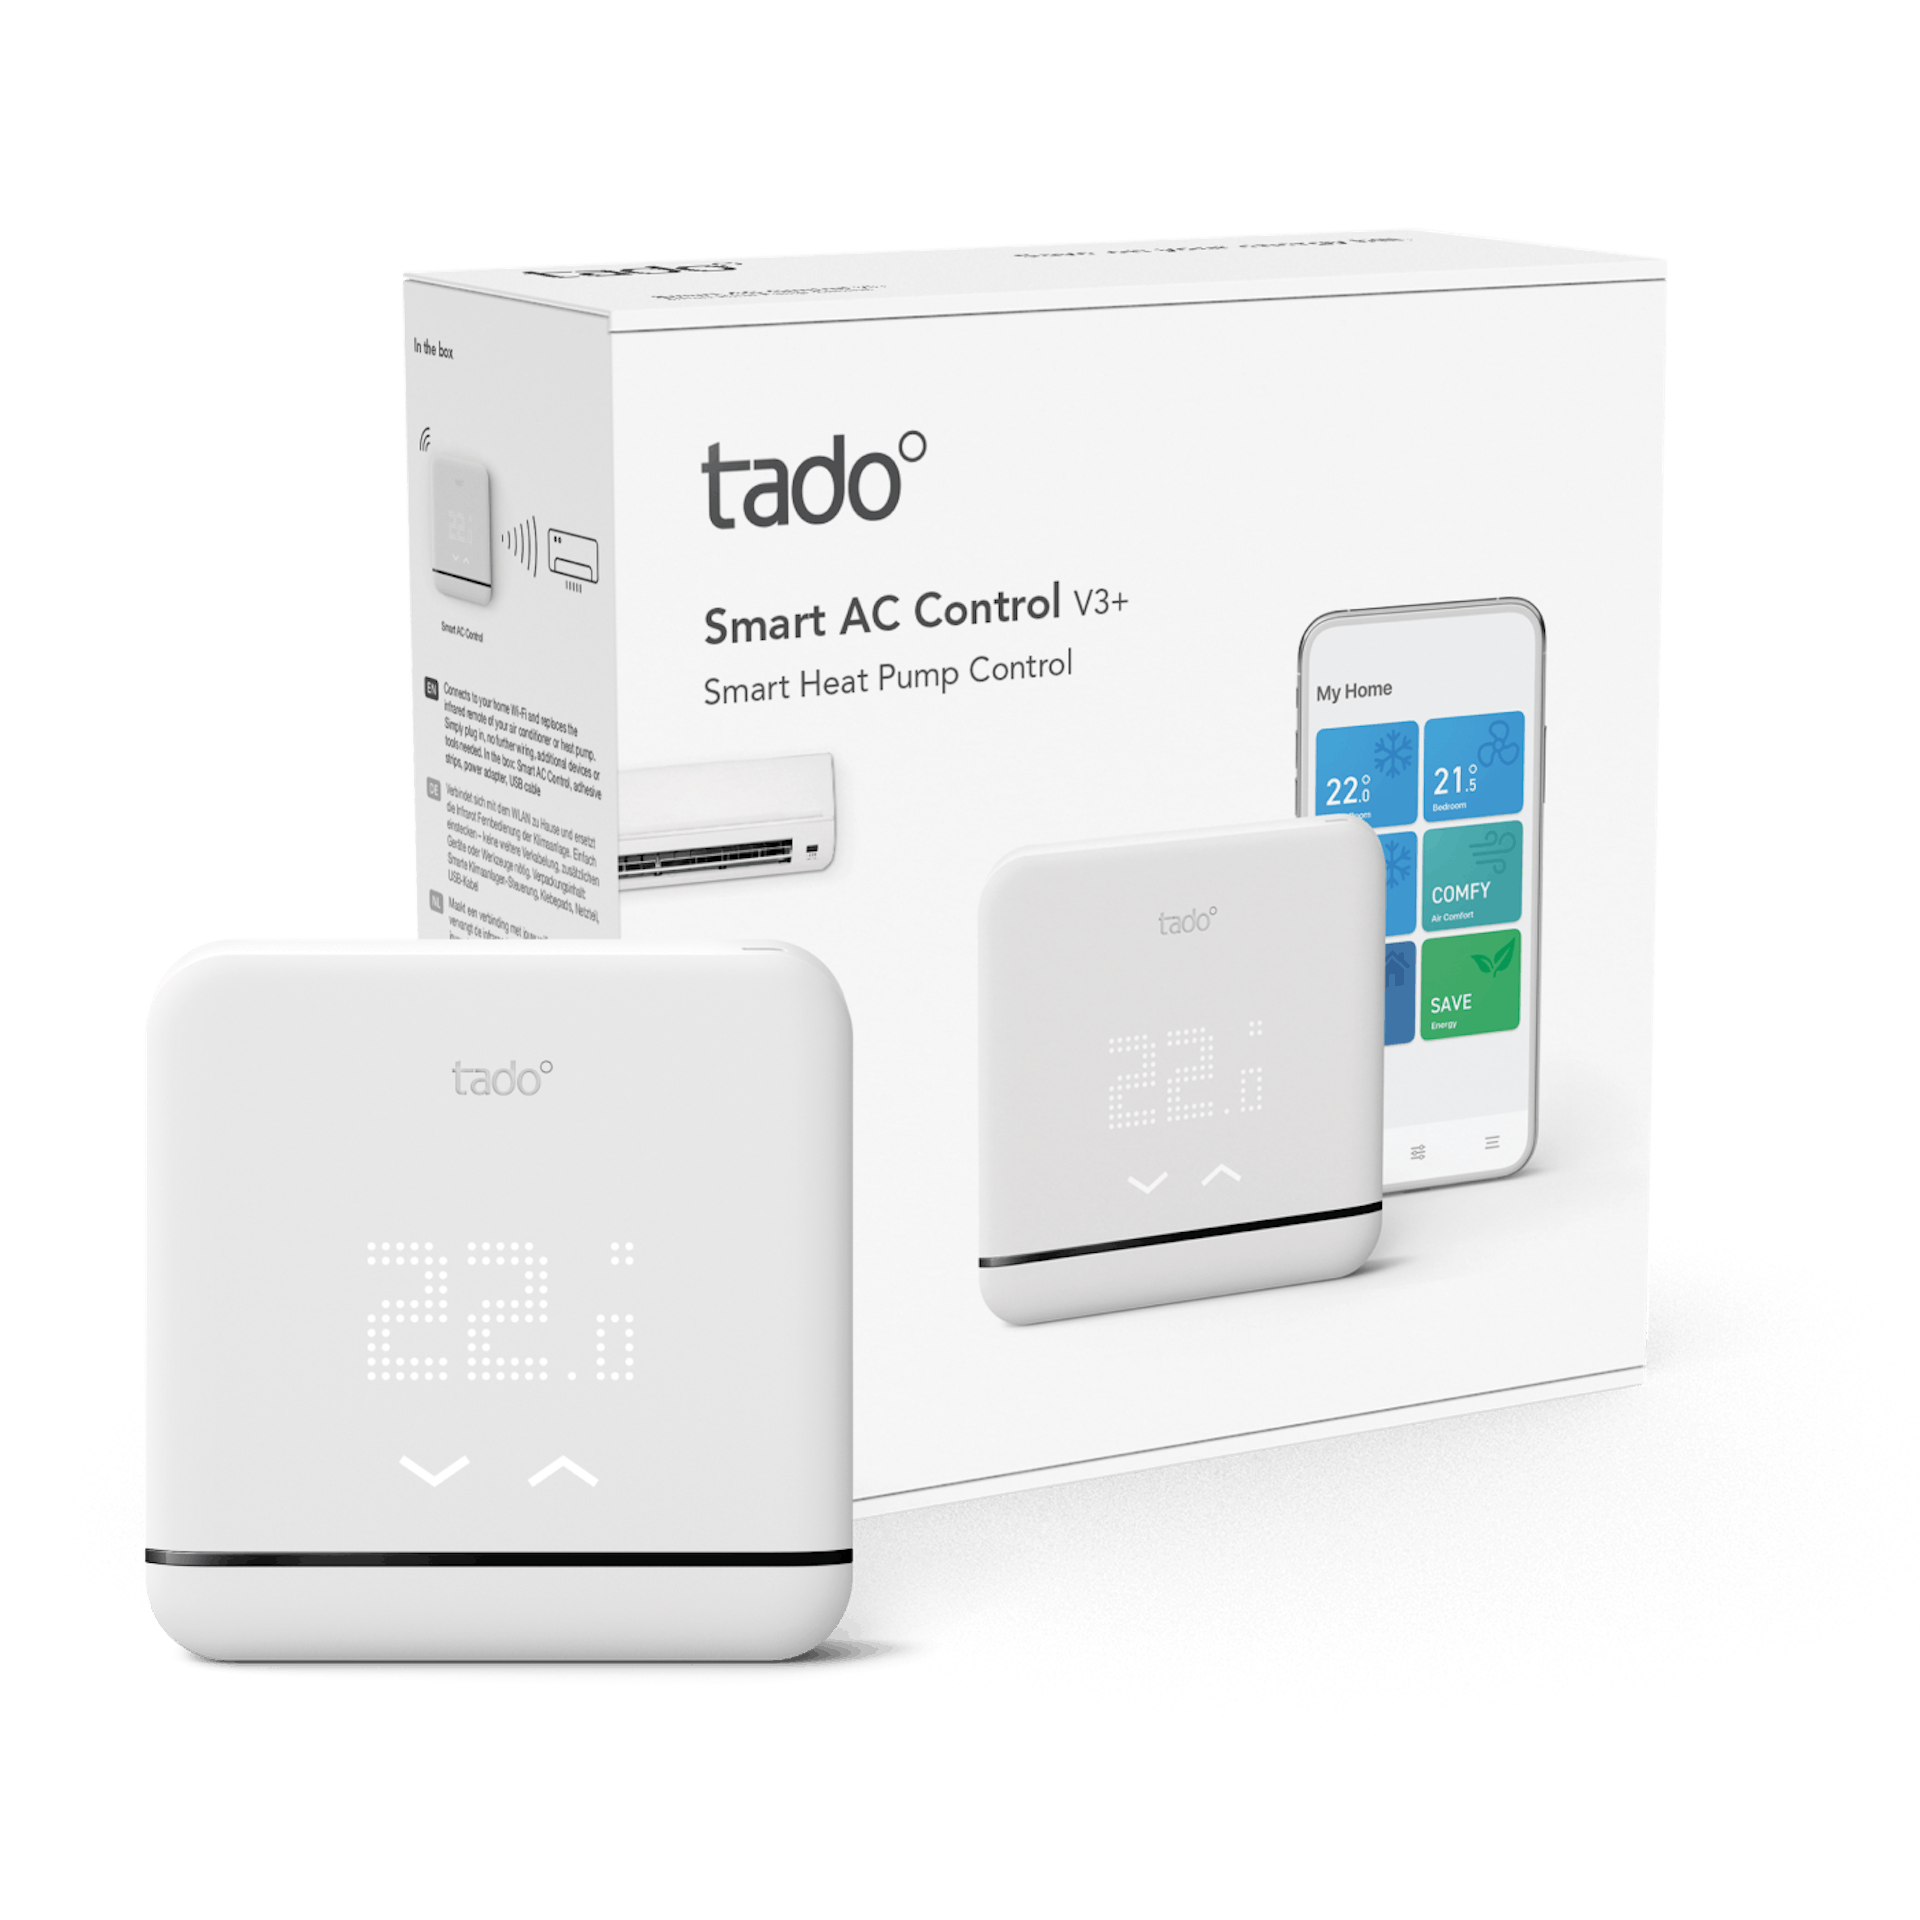 Tado - Smart AC control V3+ - Packaging image